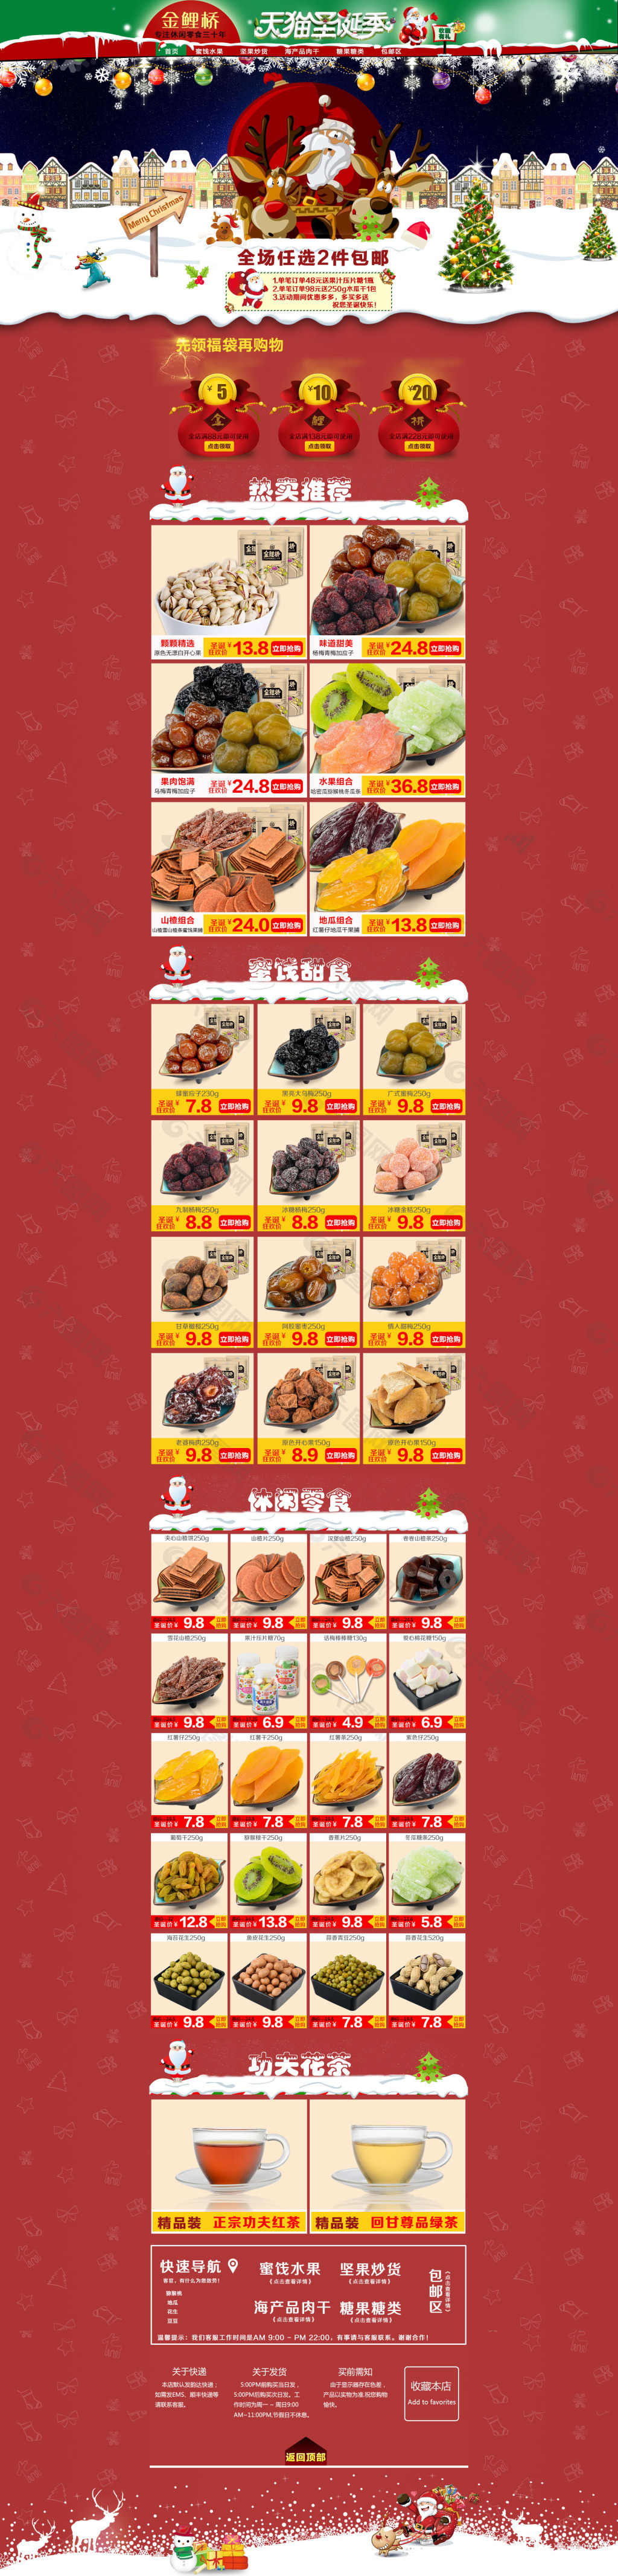 食品类圣诞节海报模板